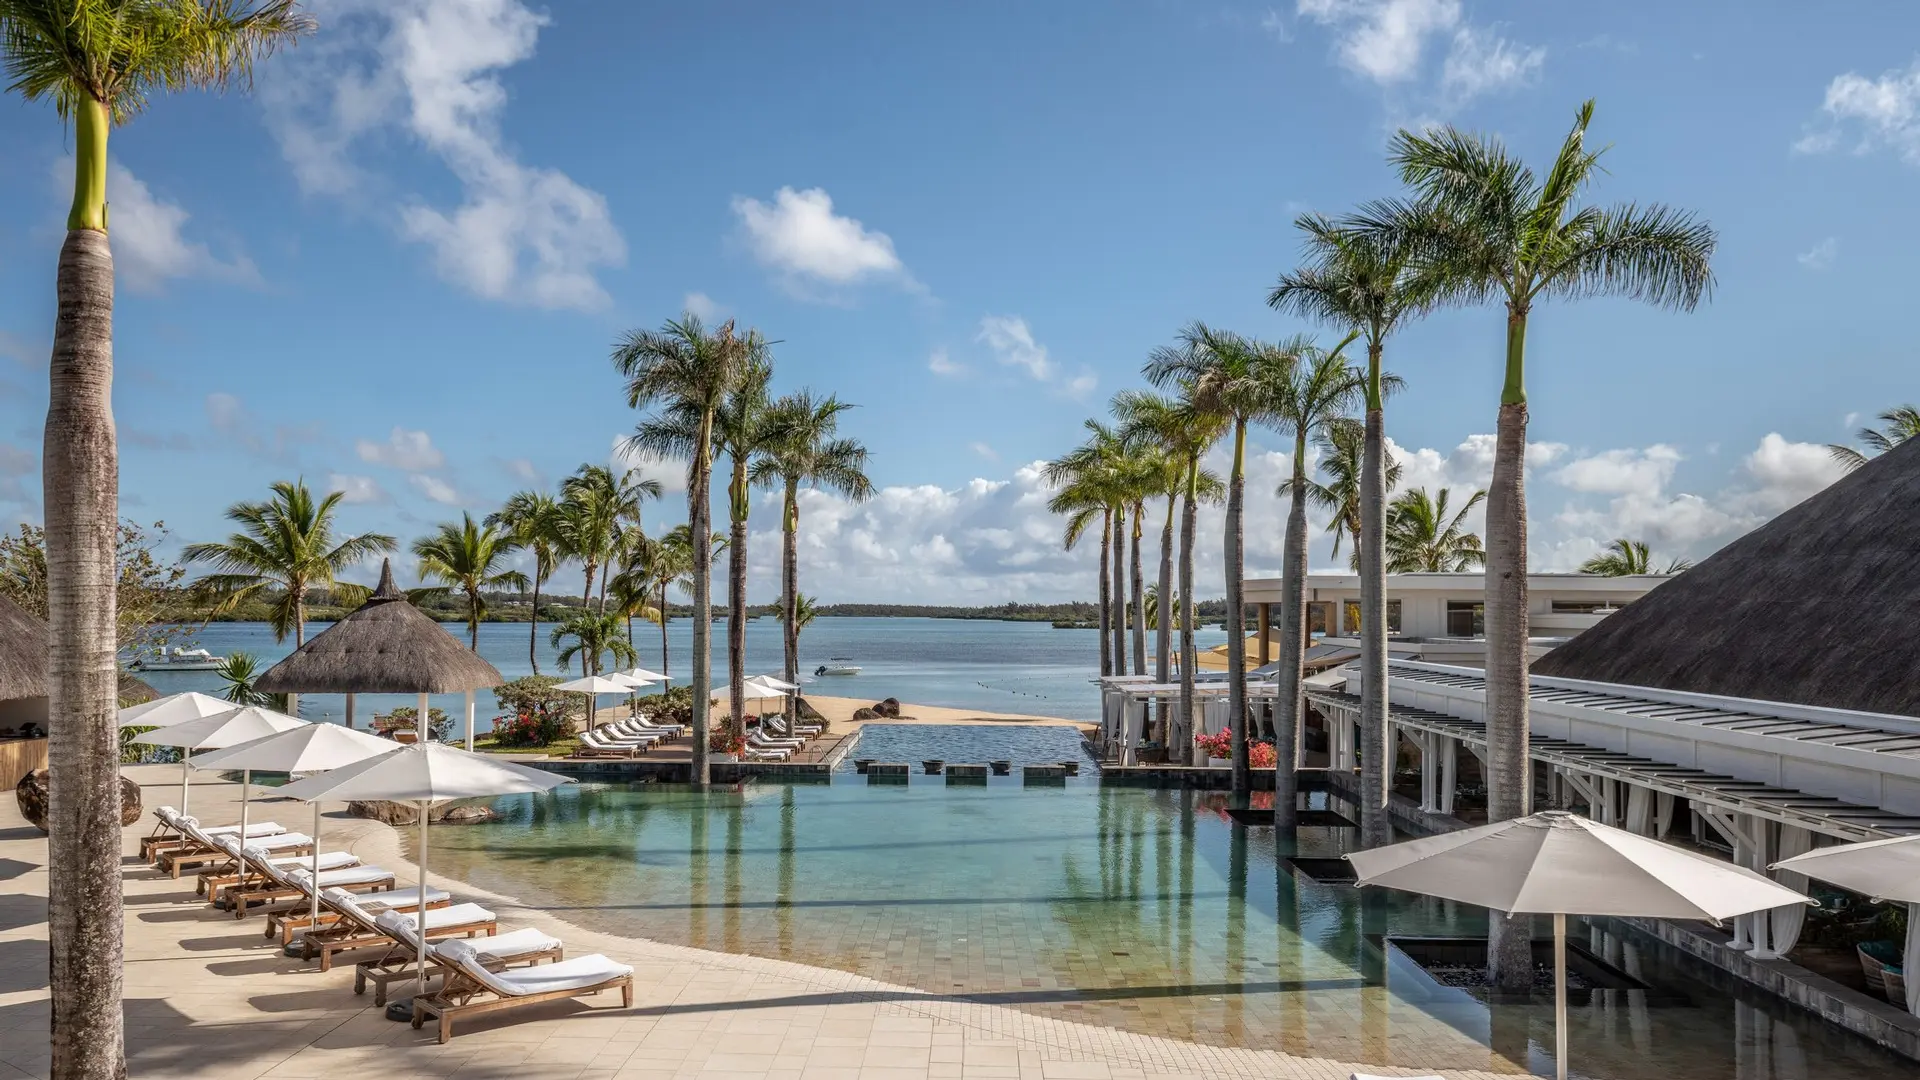 Hotel review Service & Facilities' - Four Seasons Resort Mauritius at Anahita - 10